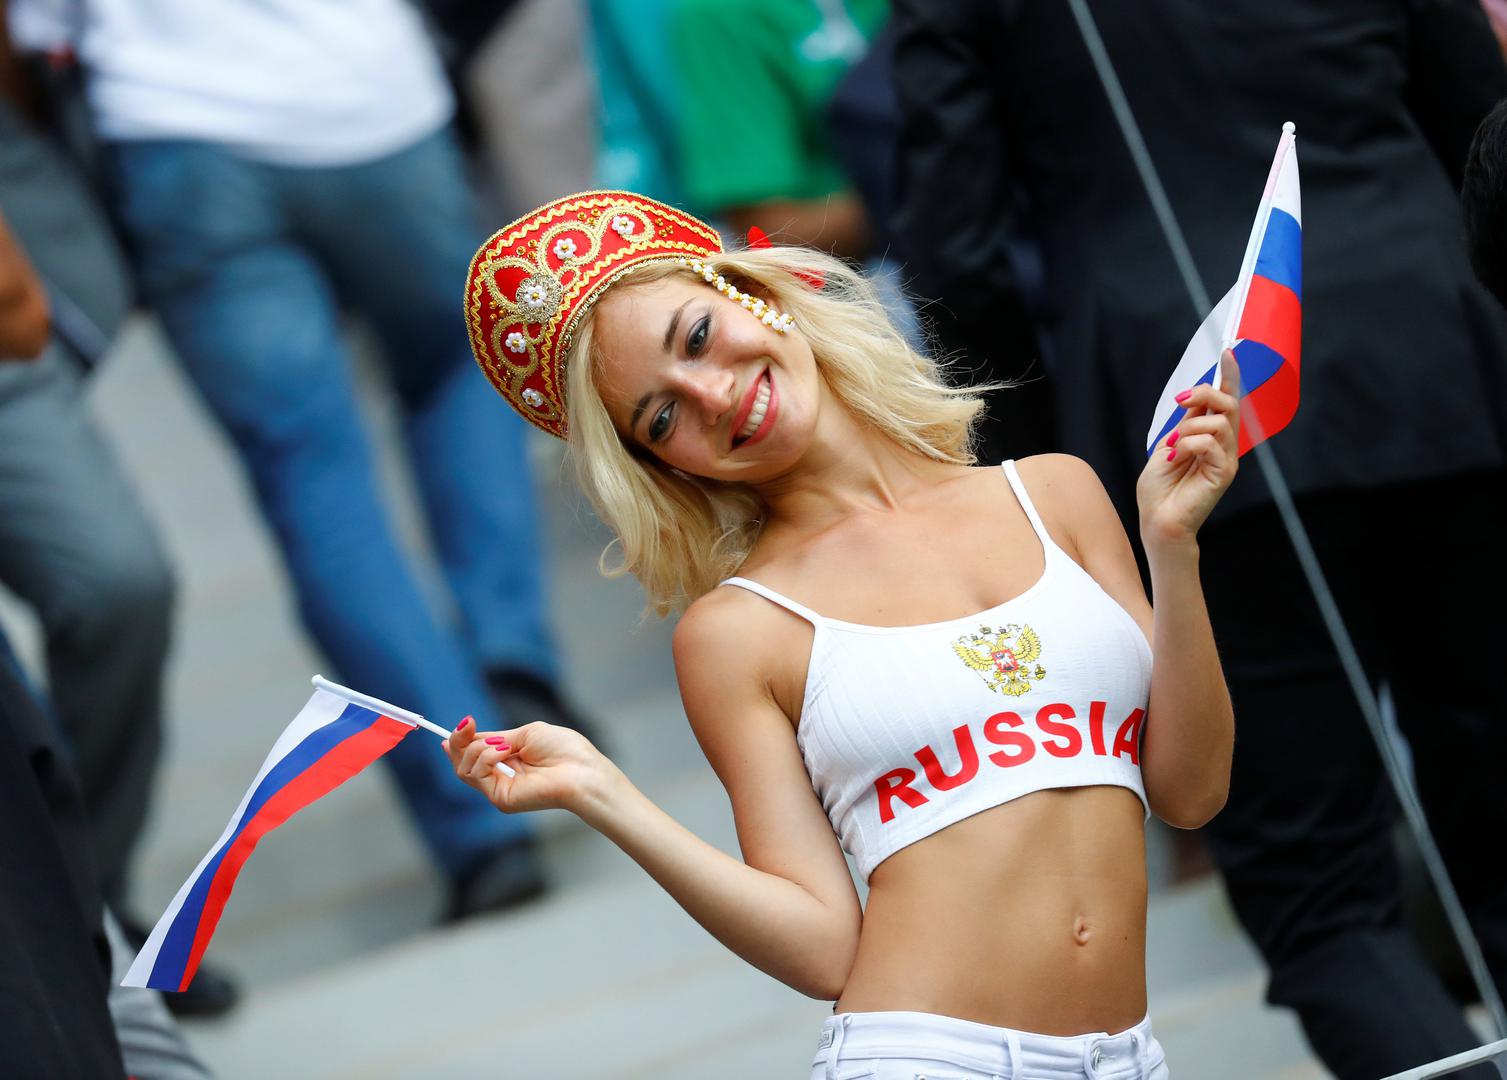 Napokon smo dočekali. Počinje Svjetsko prvenstvo u Rusiji.

